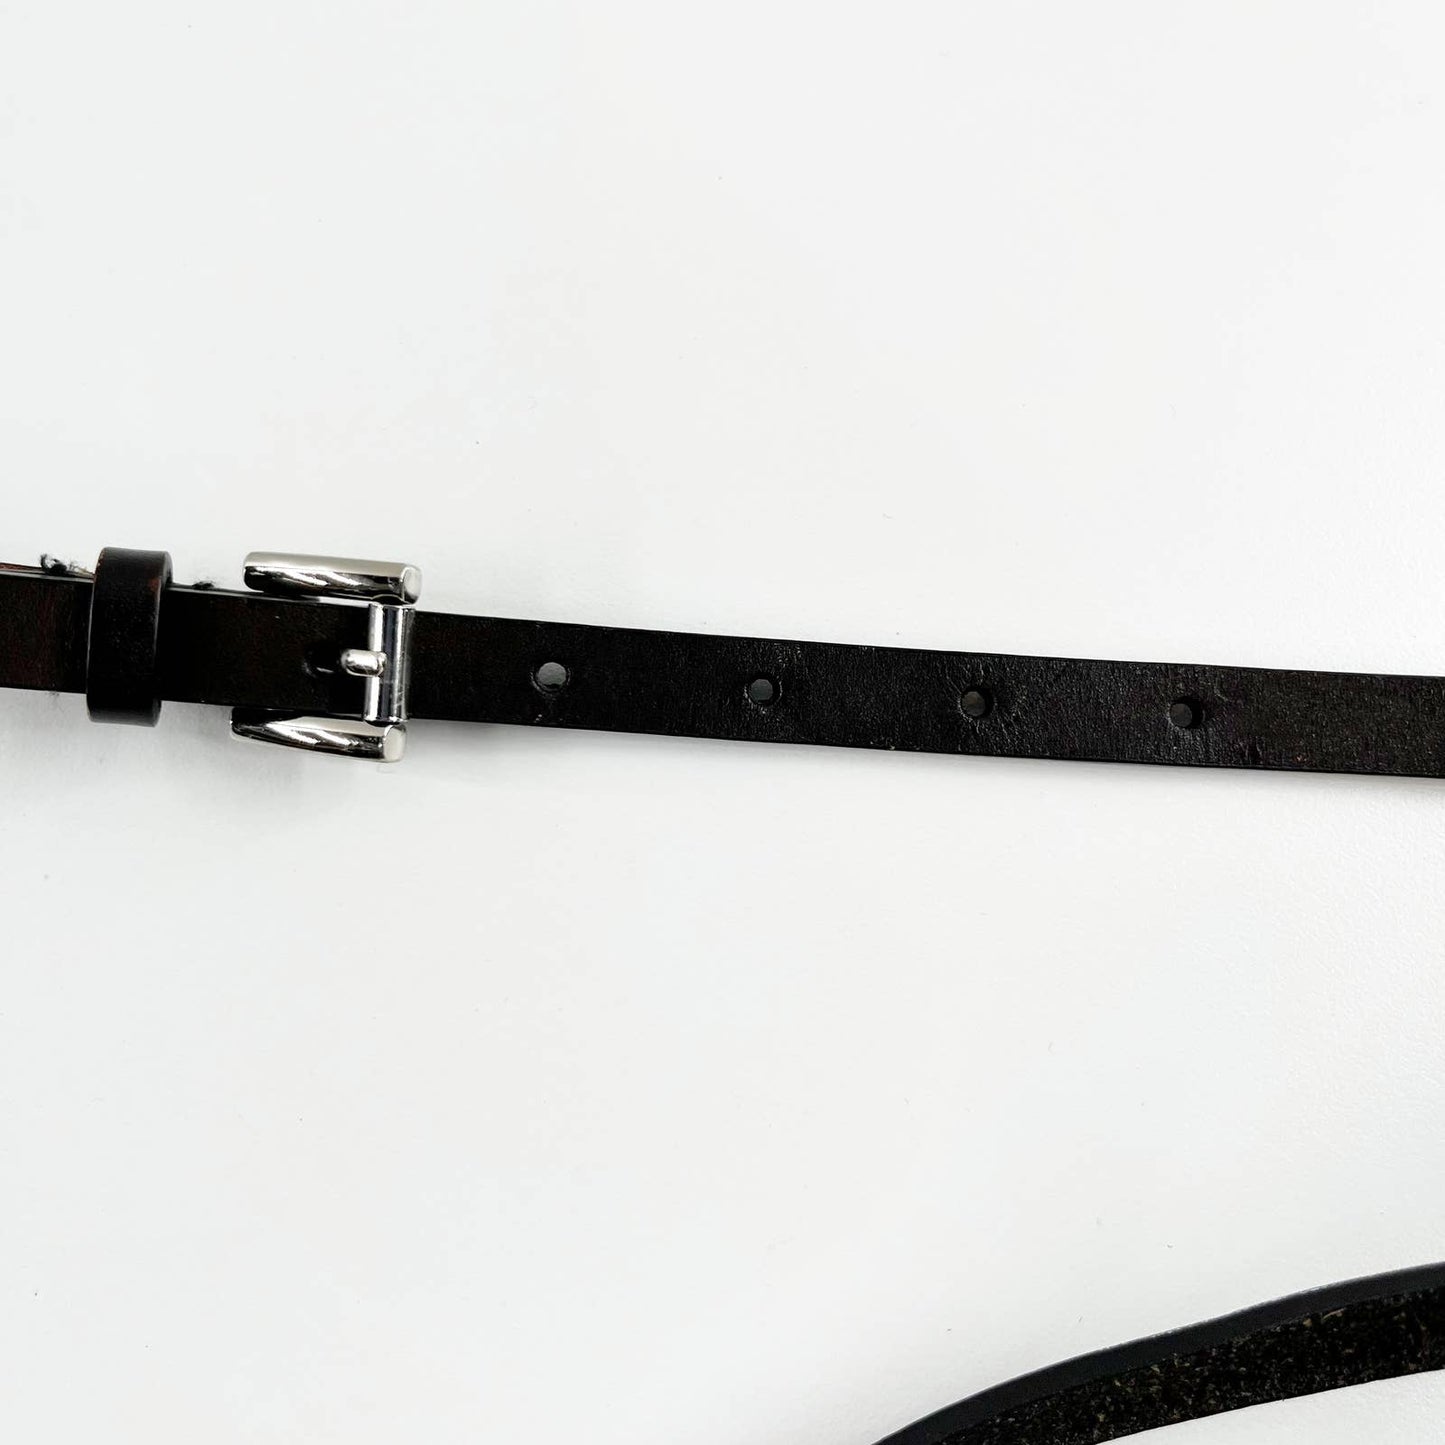 Michael Kors MK Leather Quilted Studded Square Belt Bag Black / Silver